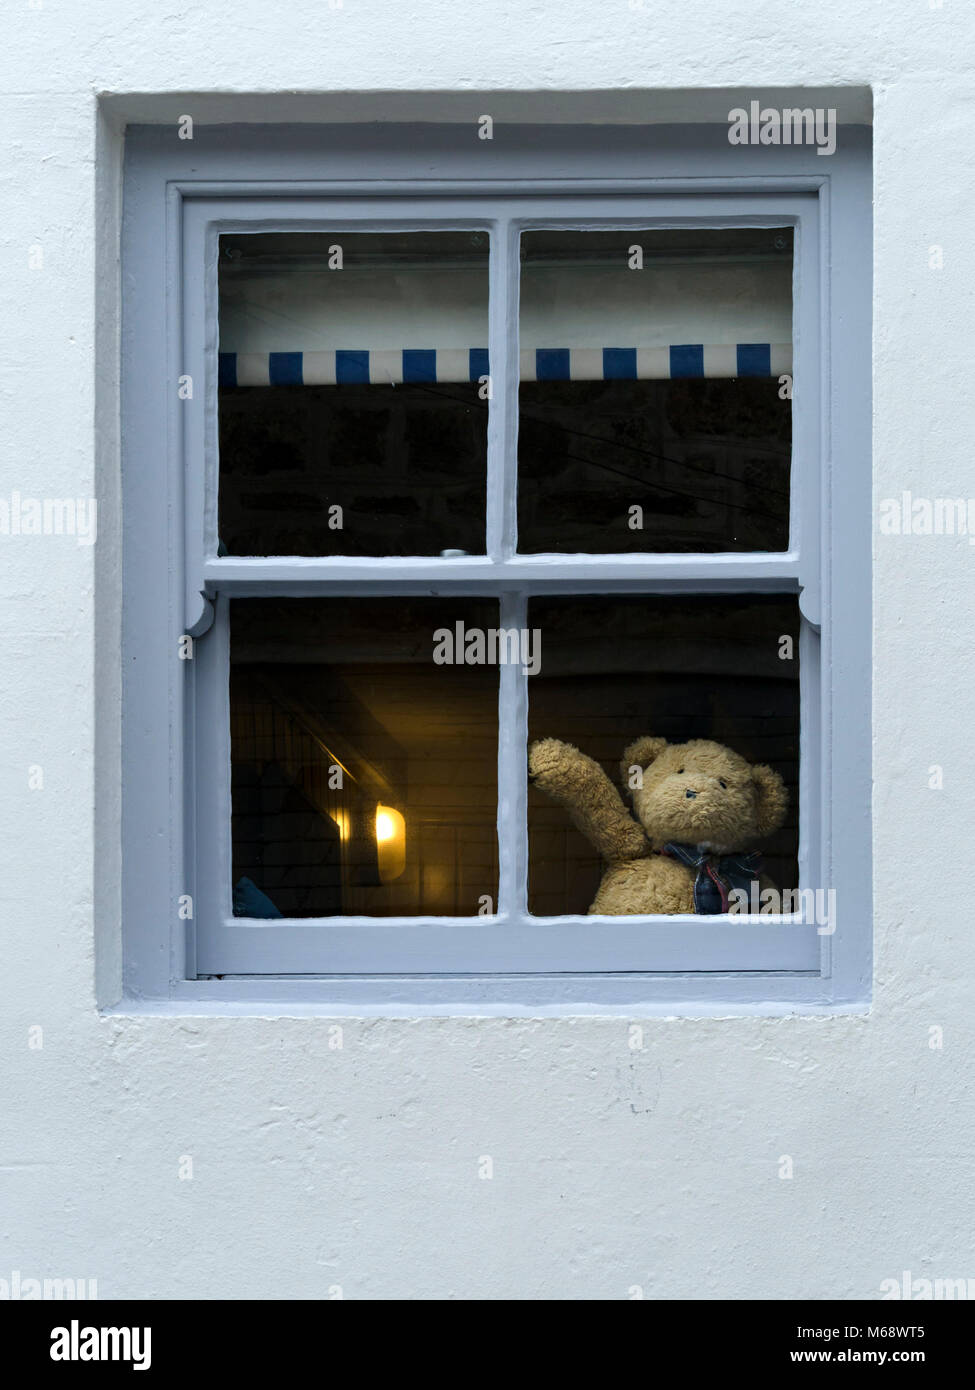 Lindo oso de peluche saludando o adiós de la ventana de la casa sugiriendo auto aislamiento o distanciamiento social durante la pandemia del virus de la corona 19 Foto de stock